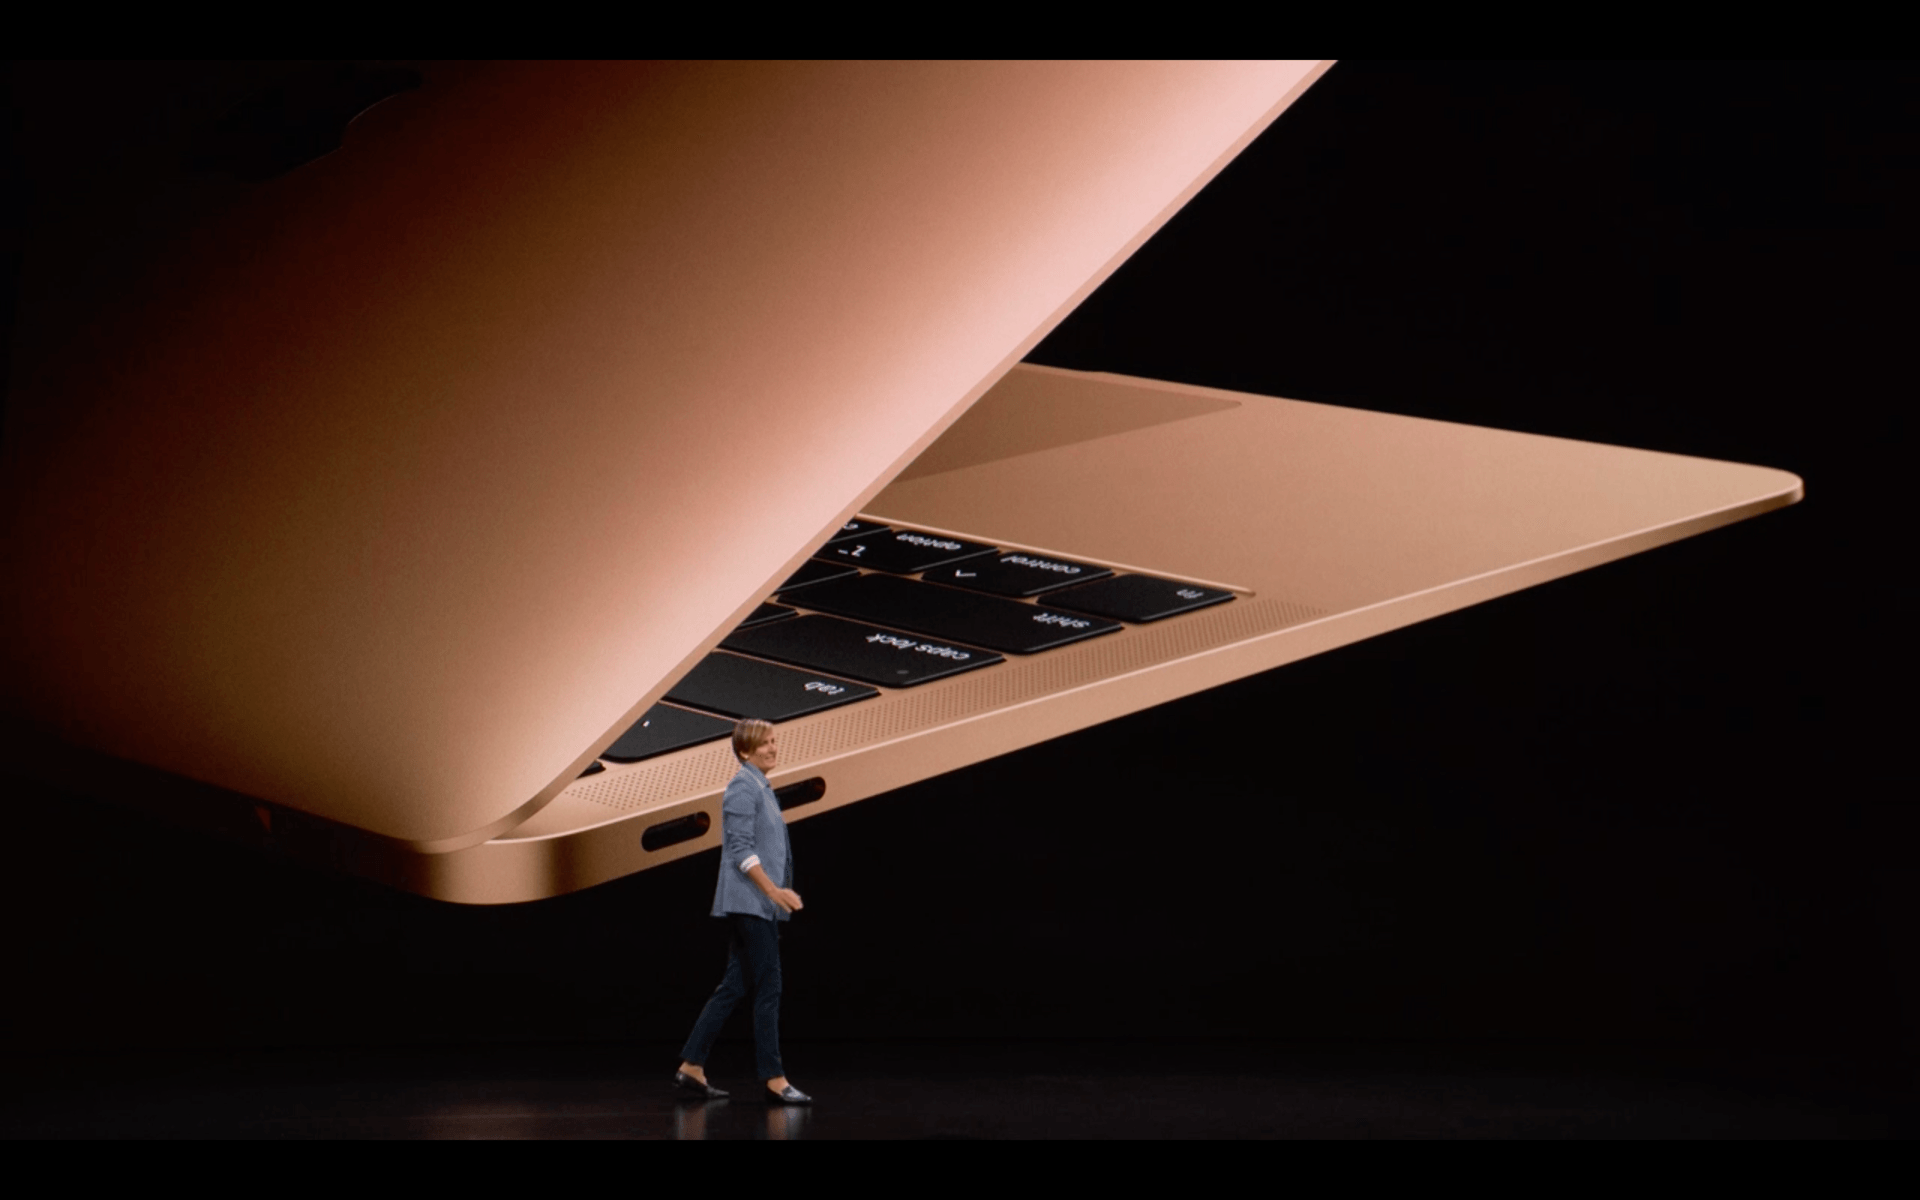 Appena presentato il nuovo MacBook Air totalmente riprogettato 2